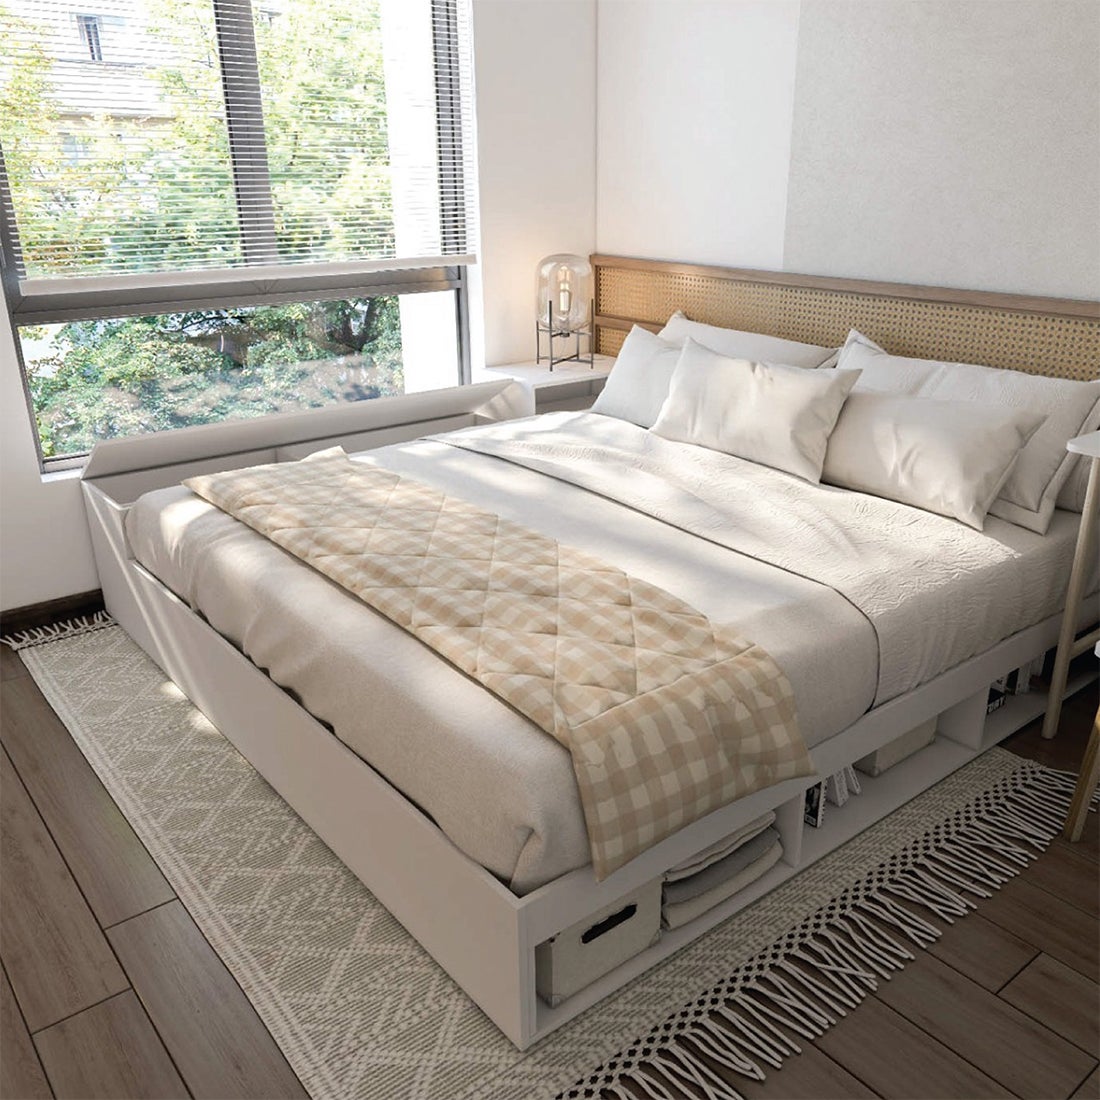 เตียงนอน+กล่องเก็บของด้านข้าง  ขนาด 6 ฟุต รุ่น KC-PLAY Fantasy สีขาว